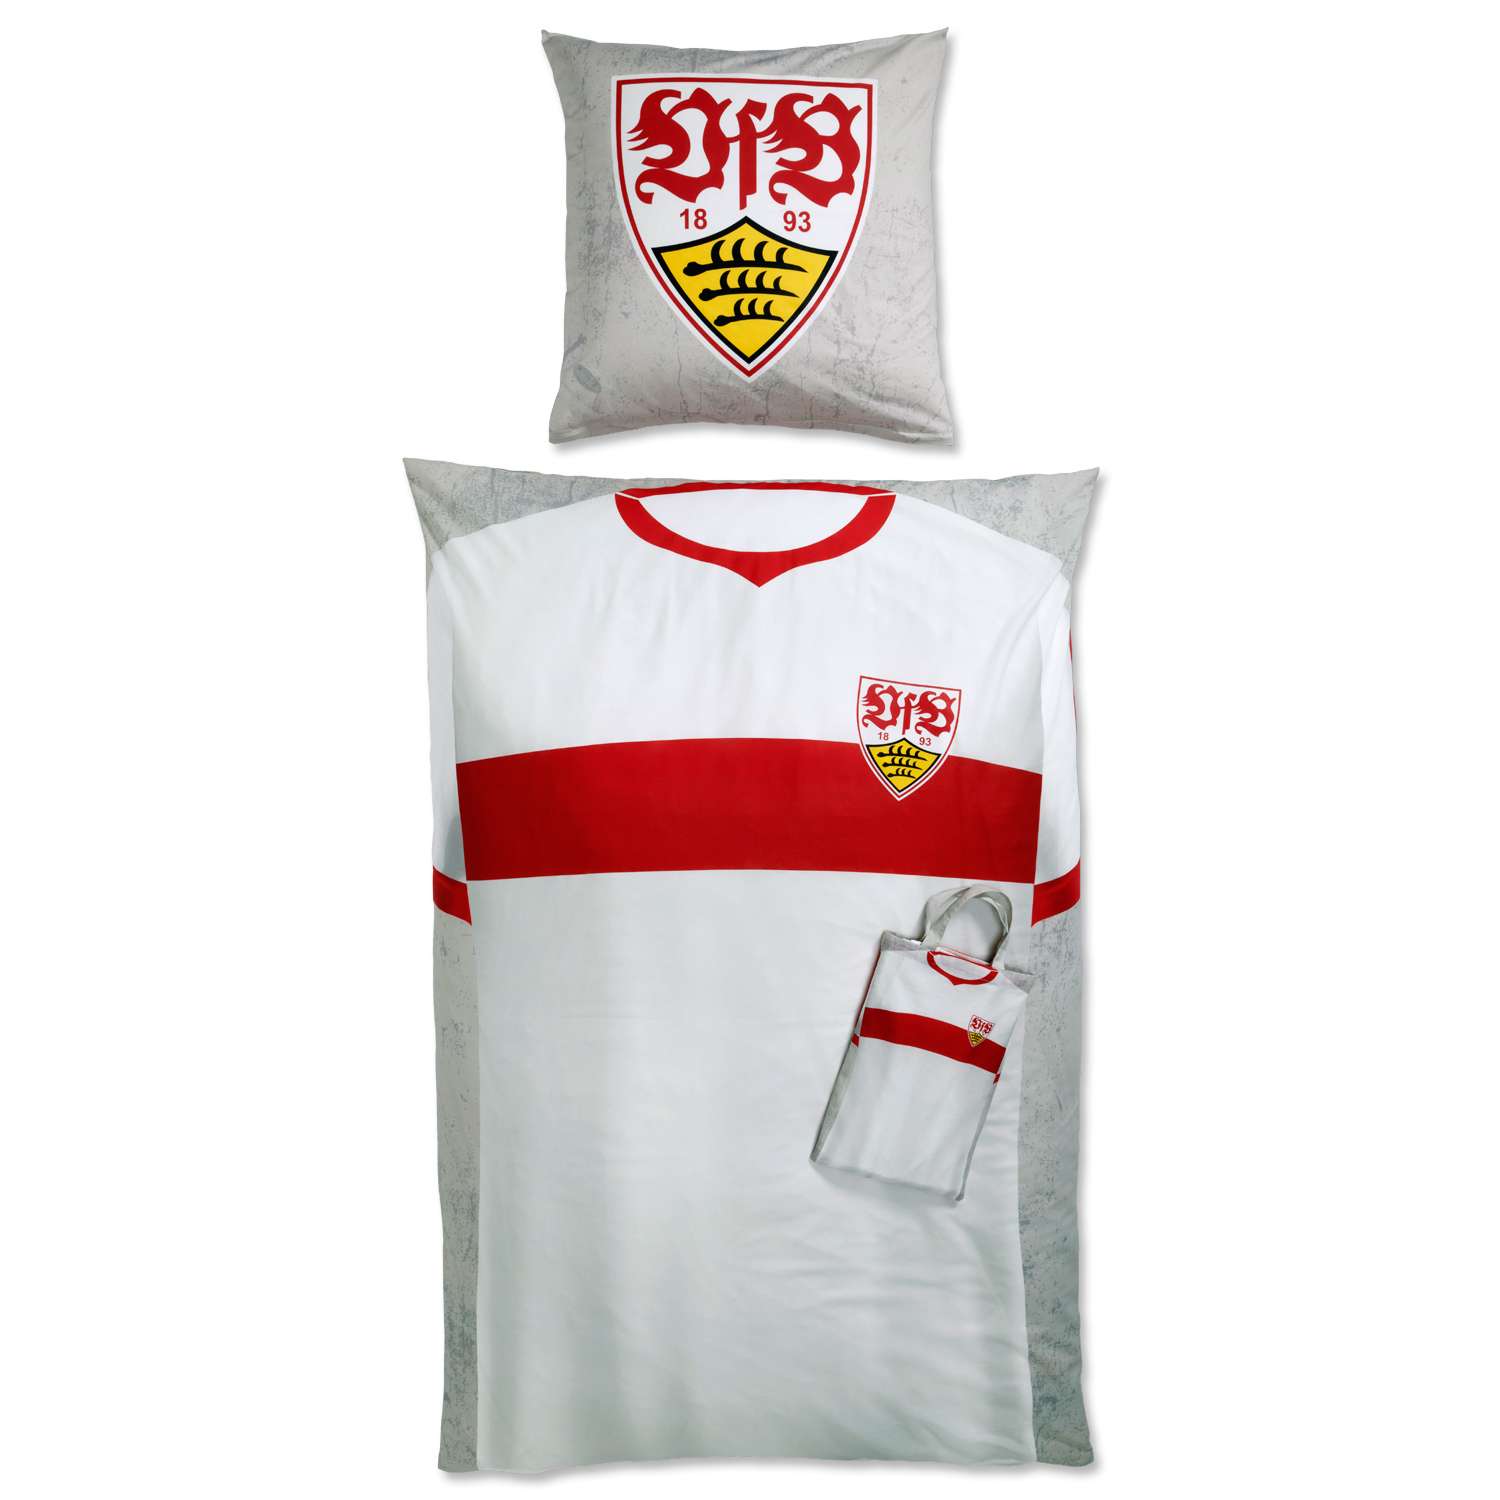 https://shop.vfb.de/media/image/8b/e6/85/19701_VfB-Stuttgart_Wendebettwaesche_Trikot_mit_Tasche_1280x1280@2x.jpg